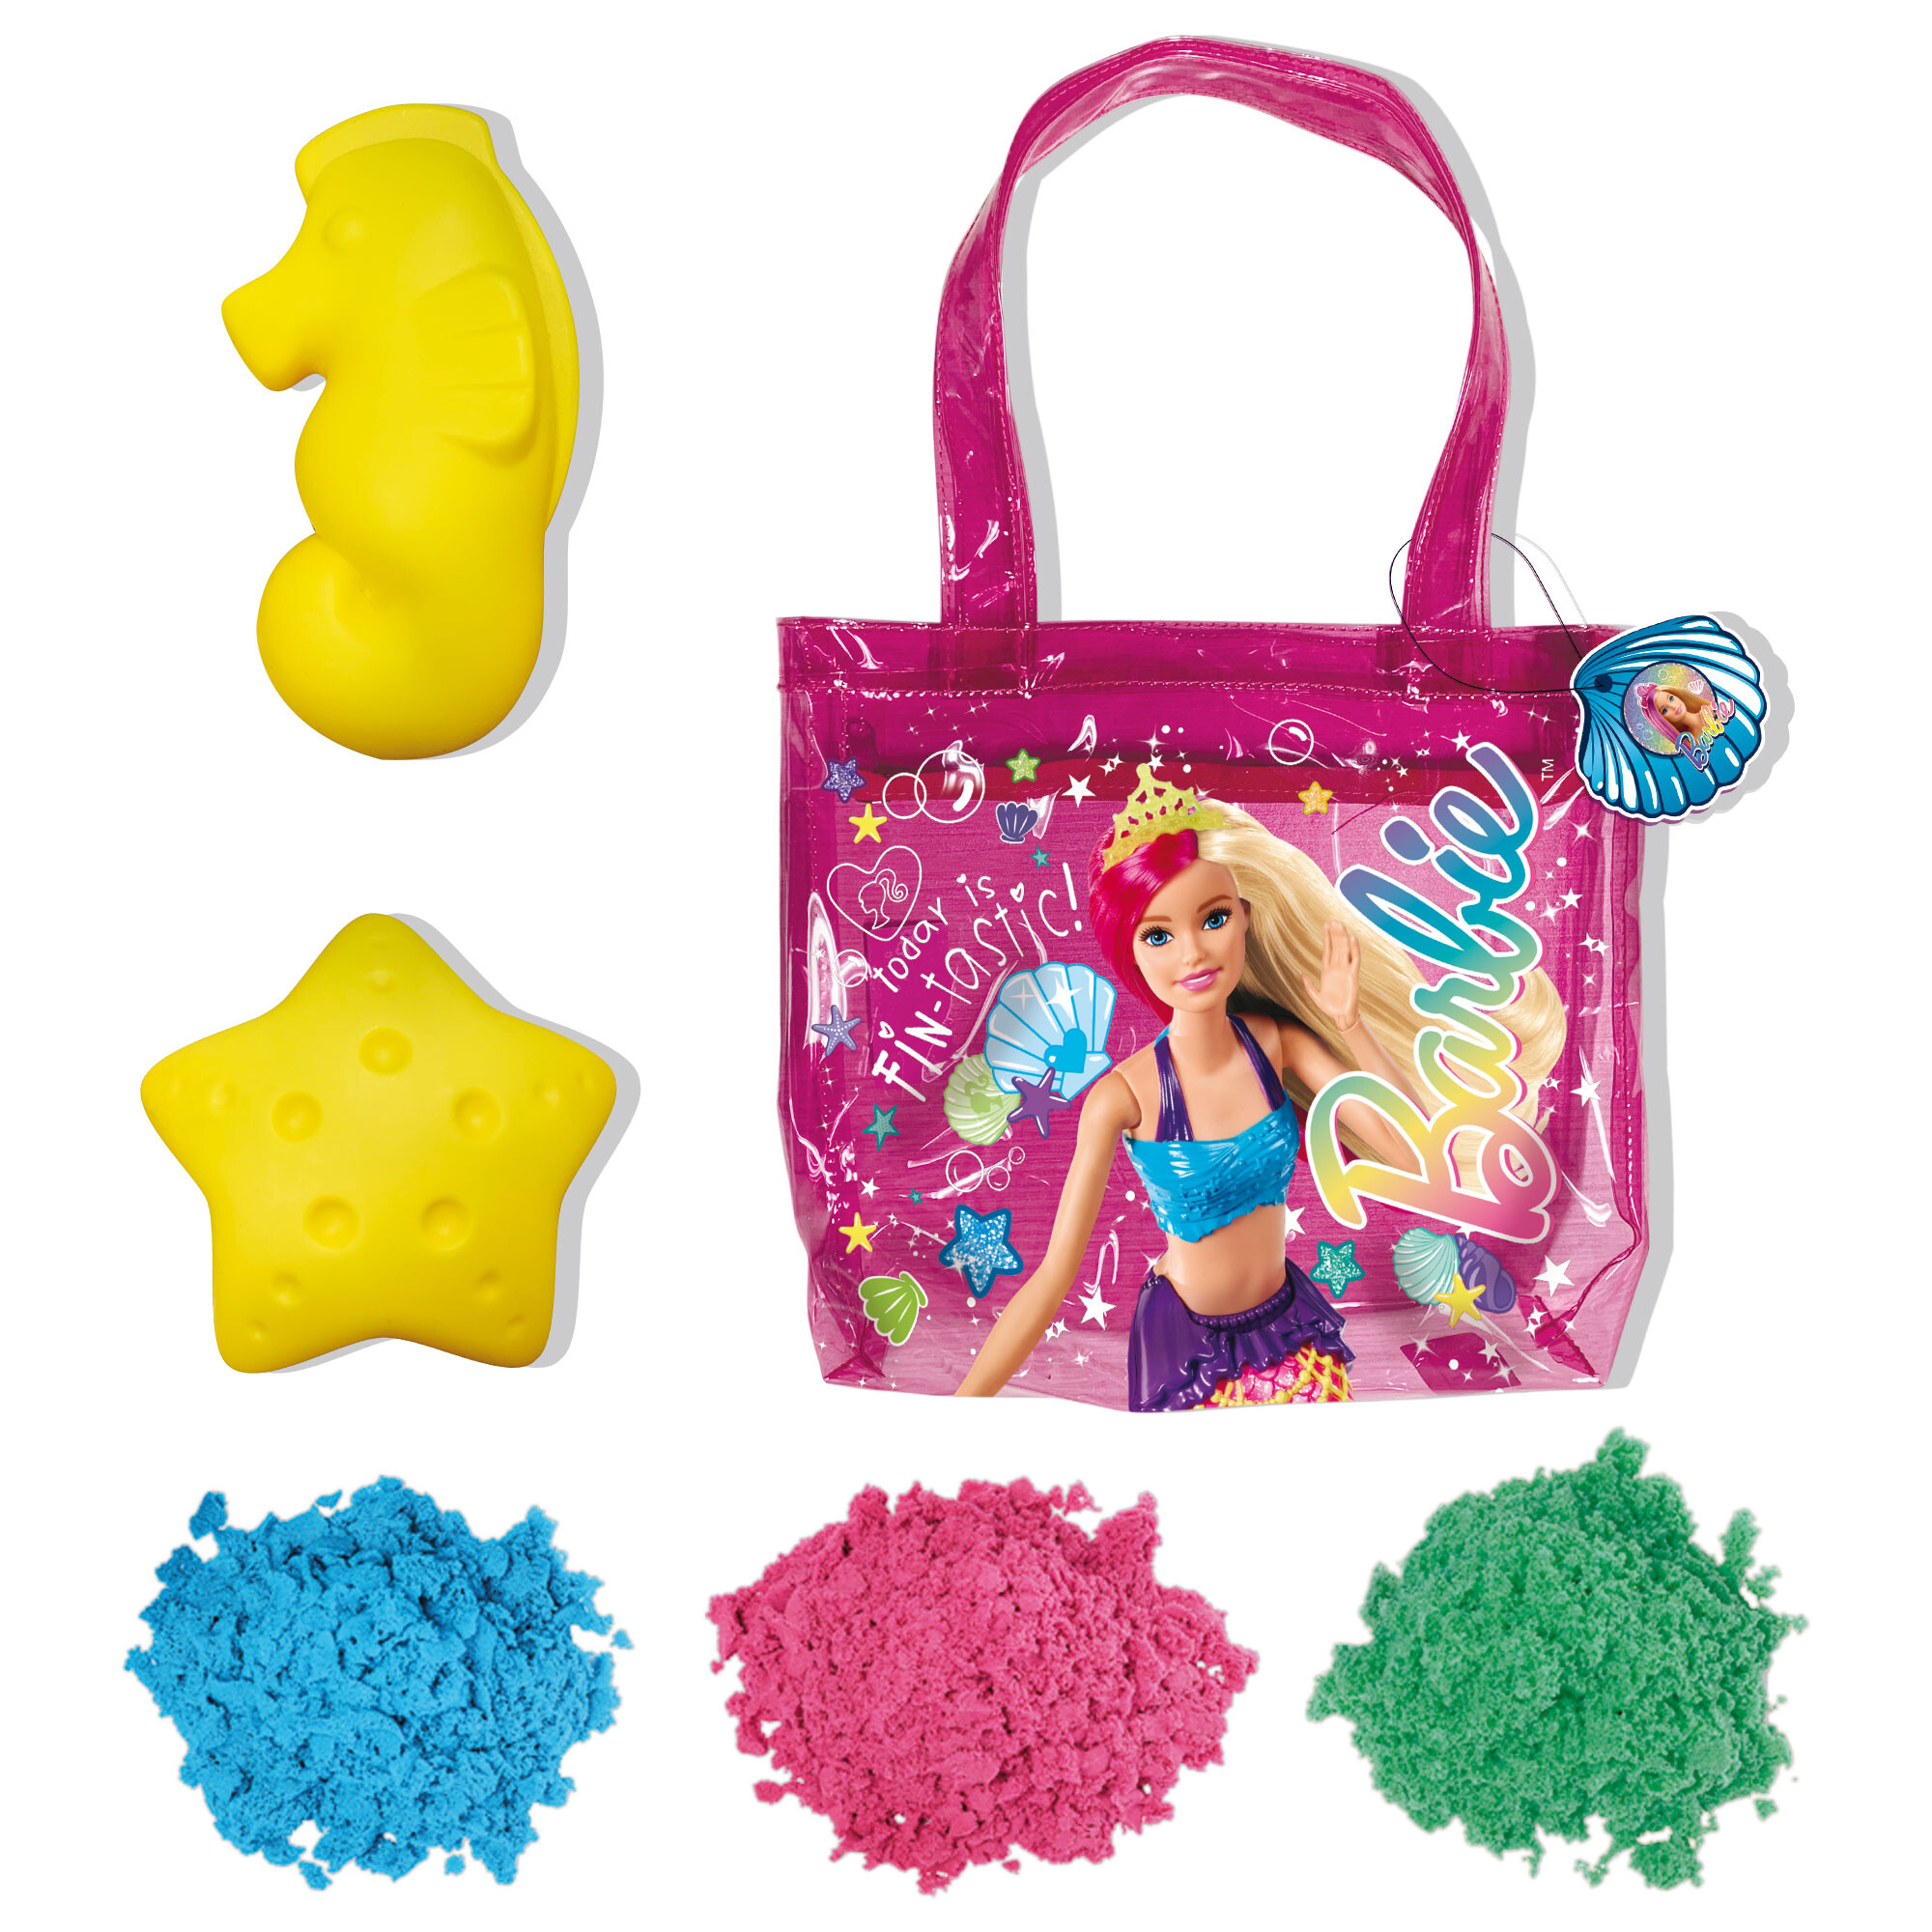 Barbie sand beach 500 g in a shopper summer bag - LISCIANI